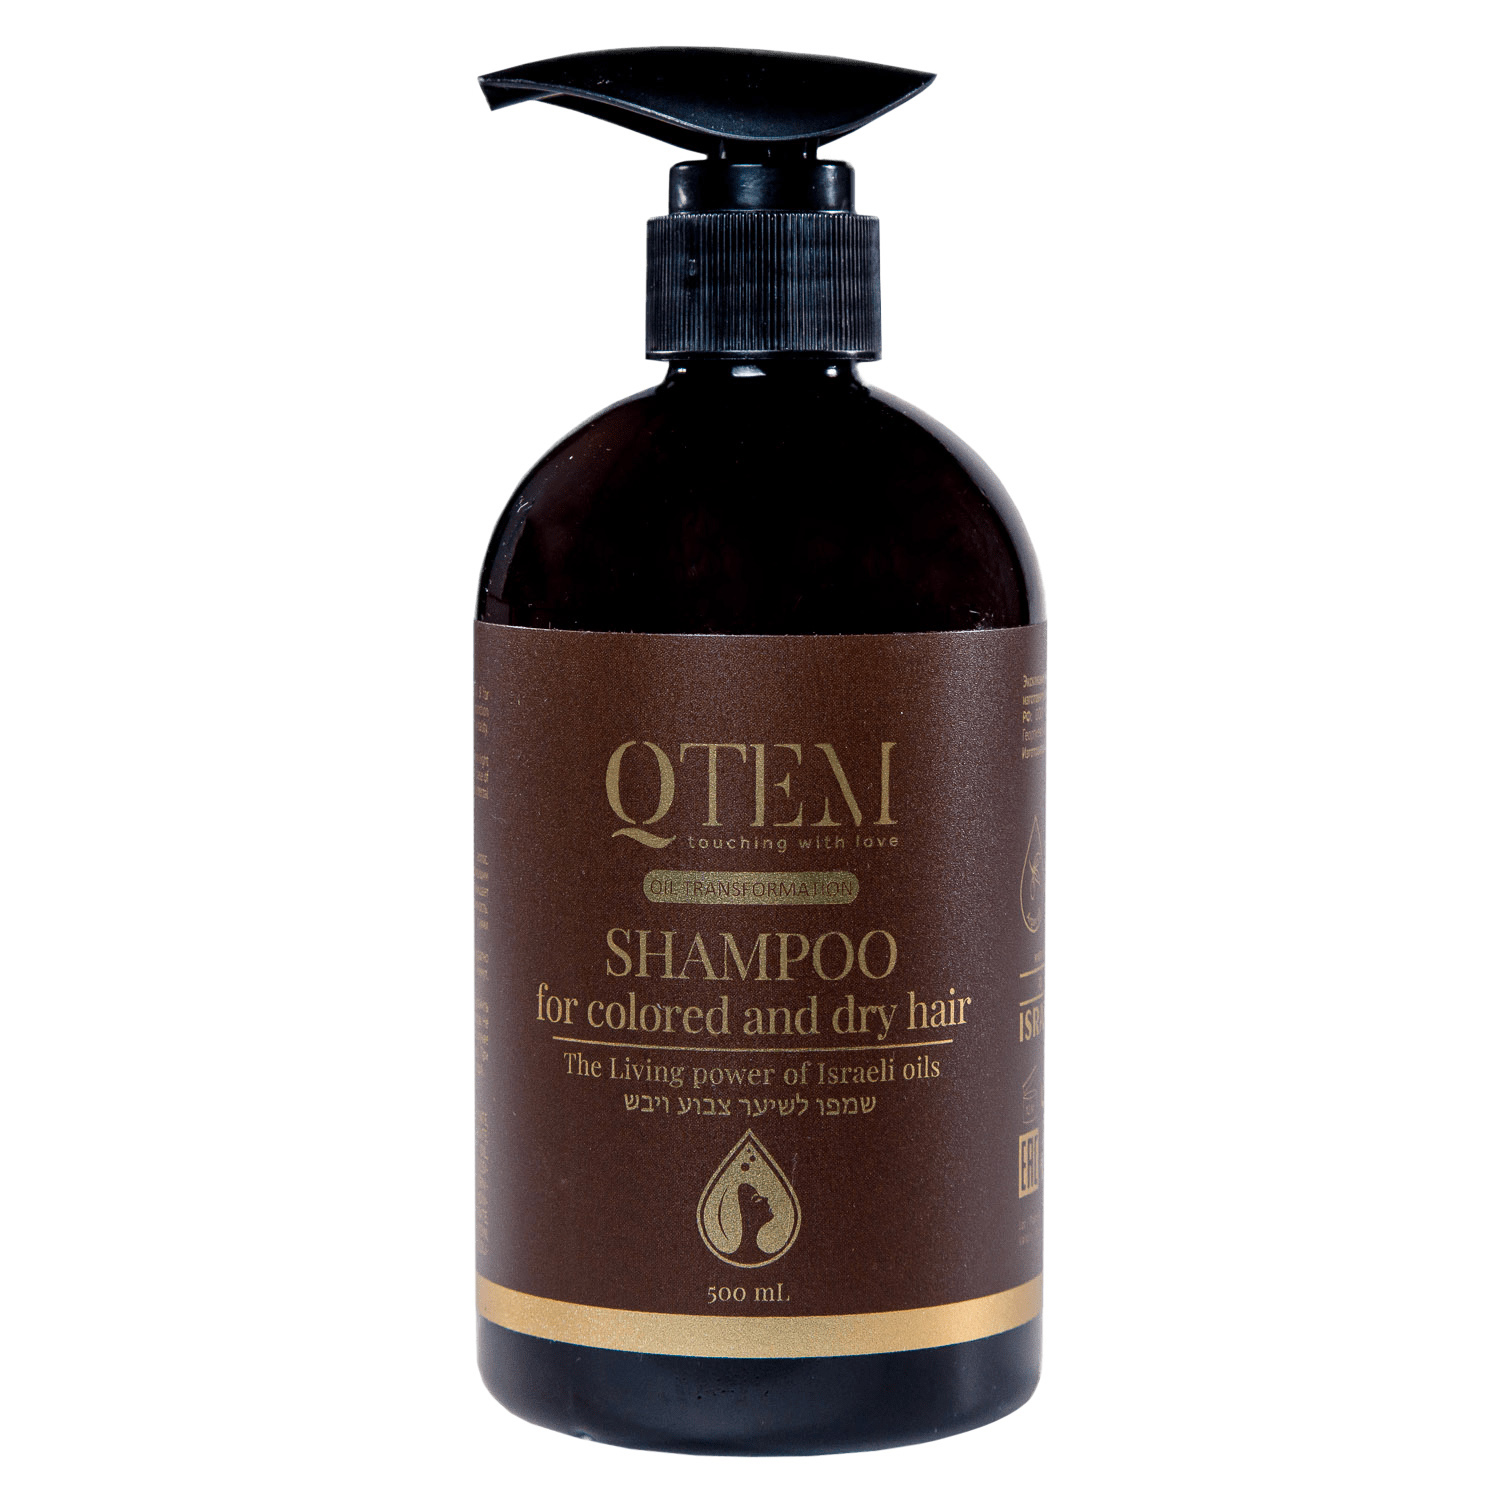 Qtem Шампунь для окрашенных и сухих волос, 500 мл (Qtem, Oil Transformation)